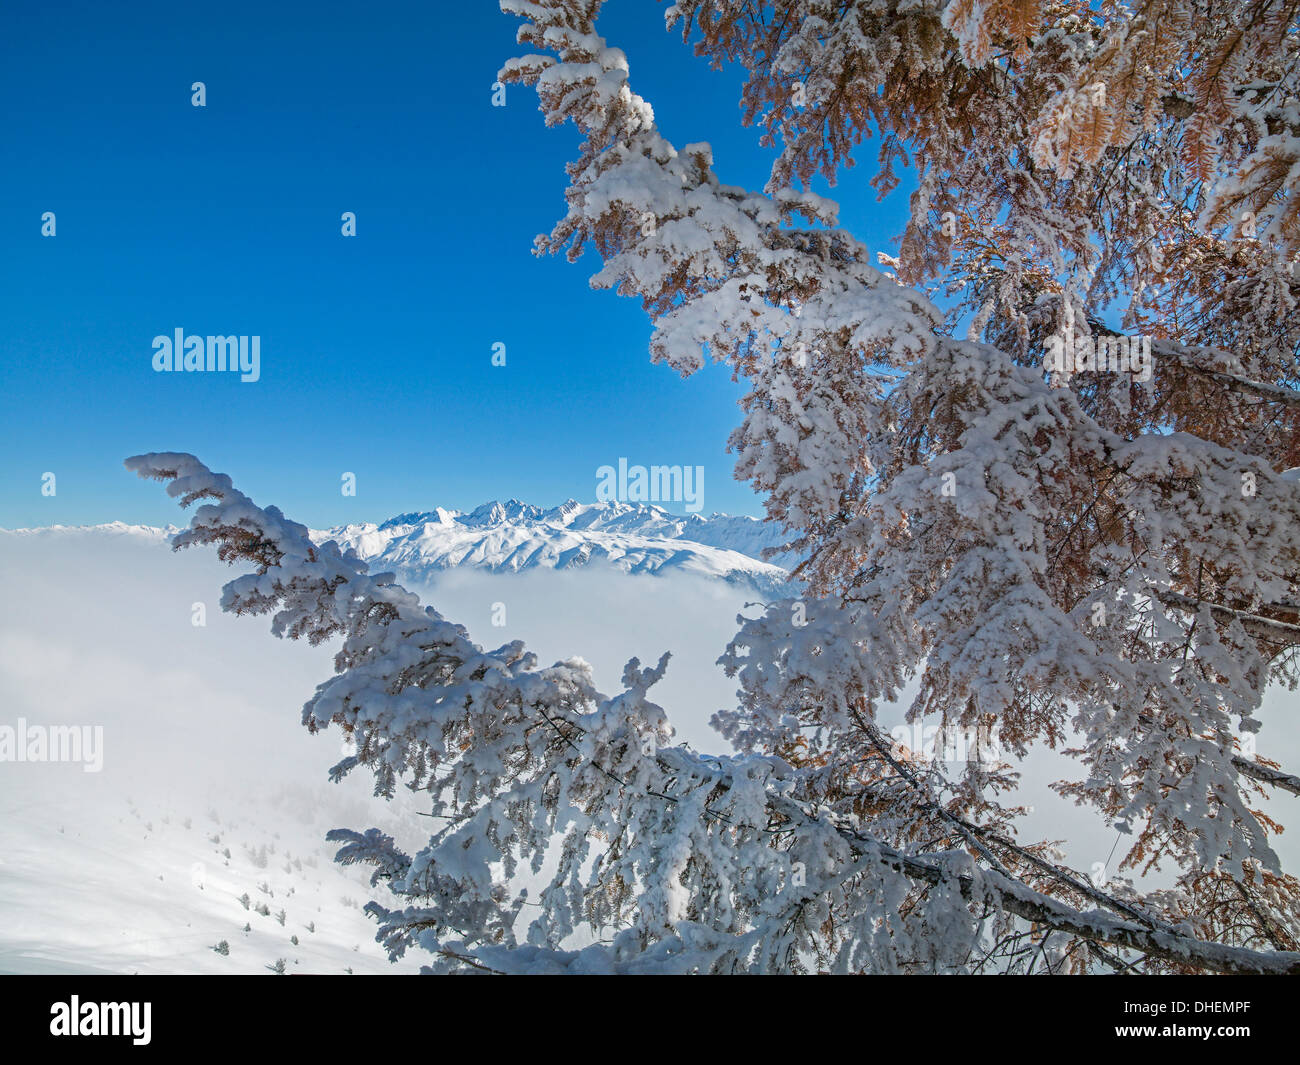 Bettmeralp, Wallis (Valais) Canton, Switzerland, Europe Stock Photo